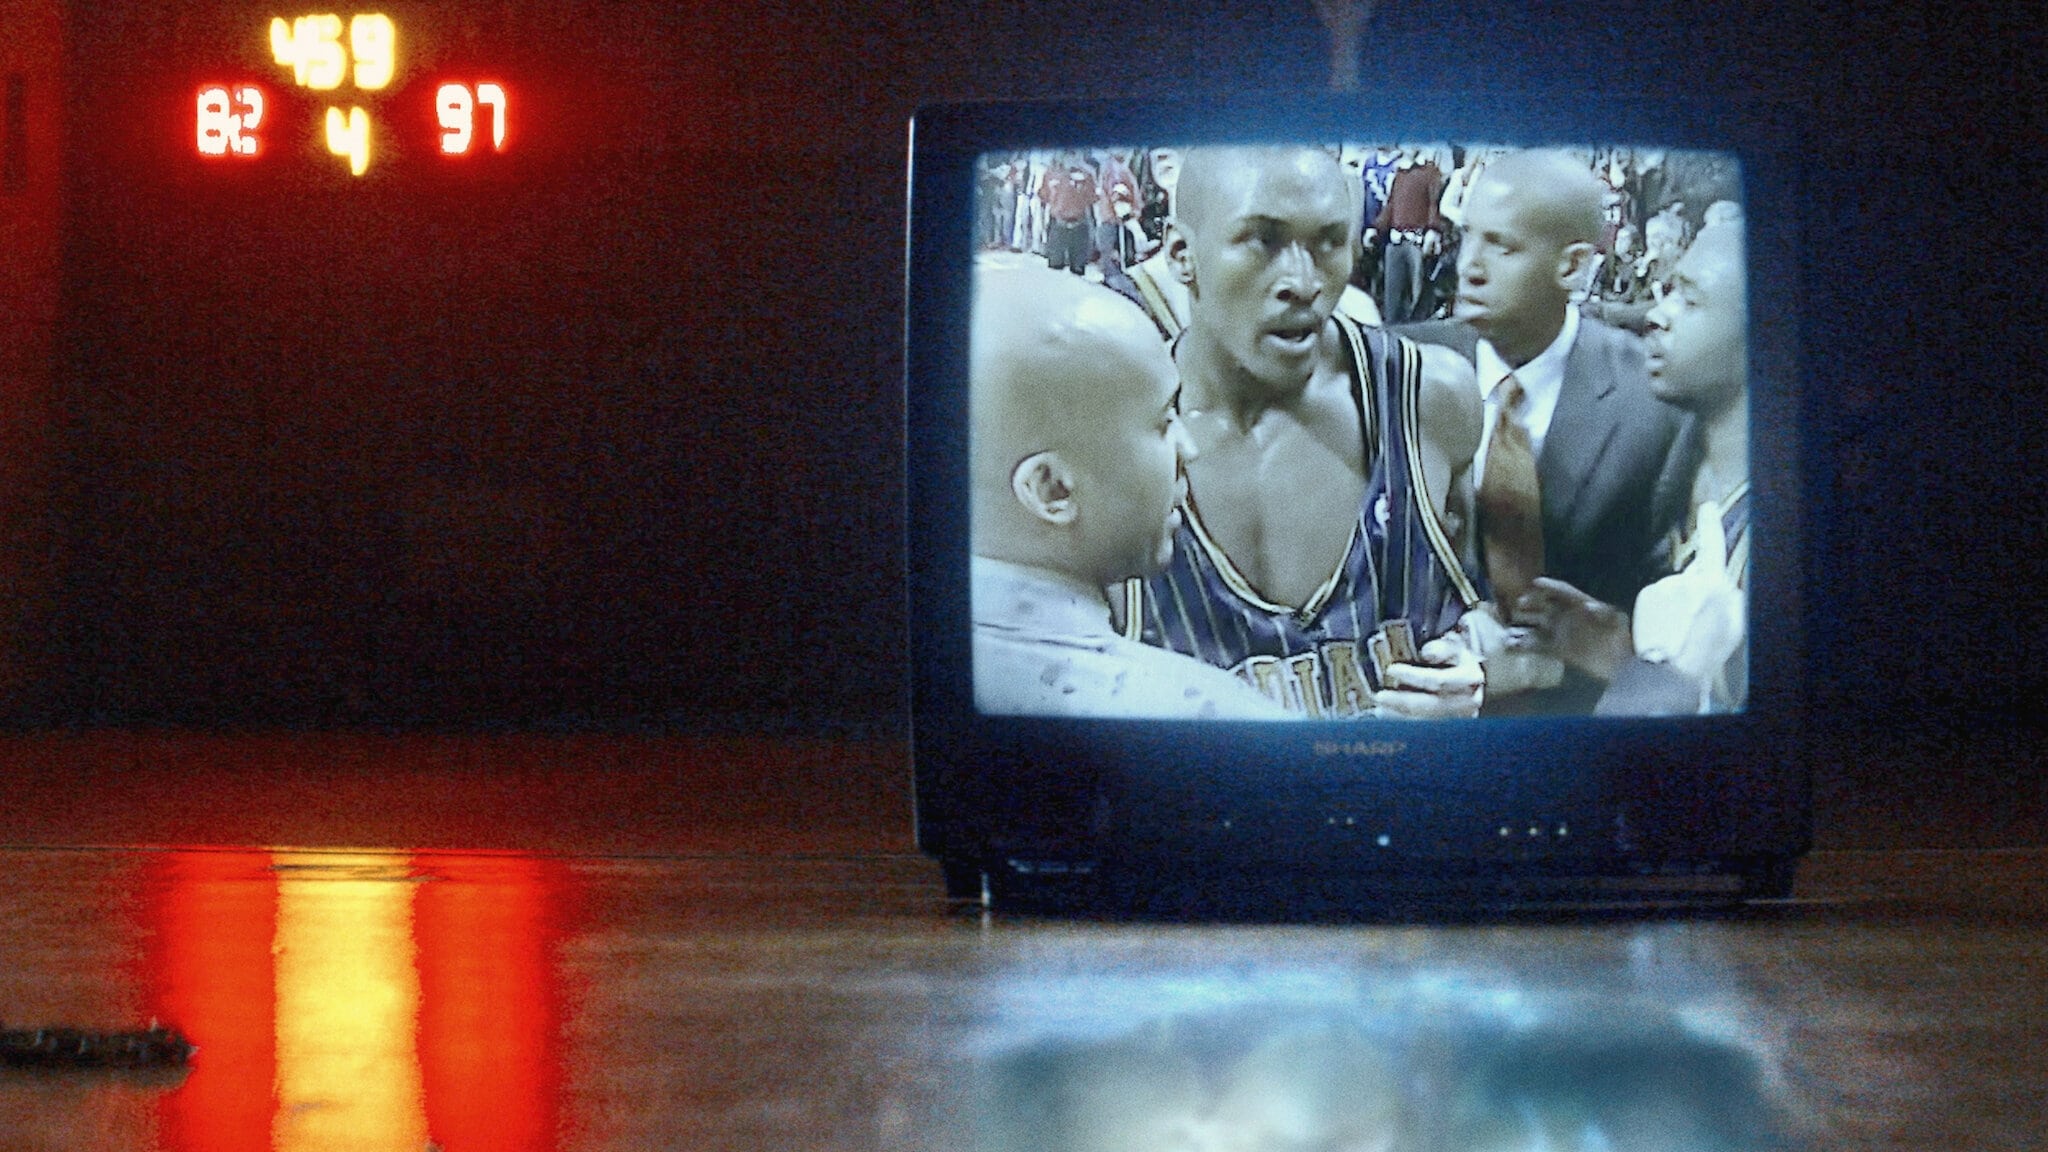 Xem Phim Bí mật giới thể thao: Ẩu đả NBA tại Palace (Untold: Malice at the Palace)